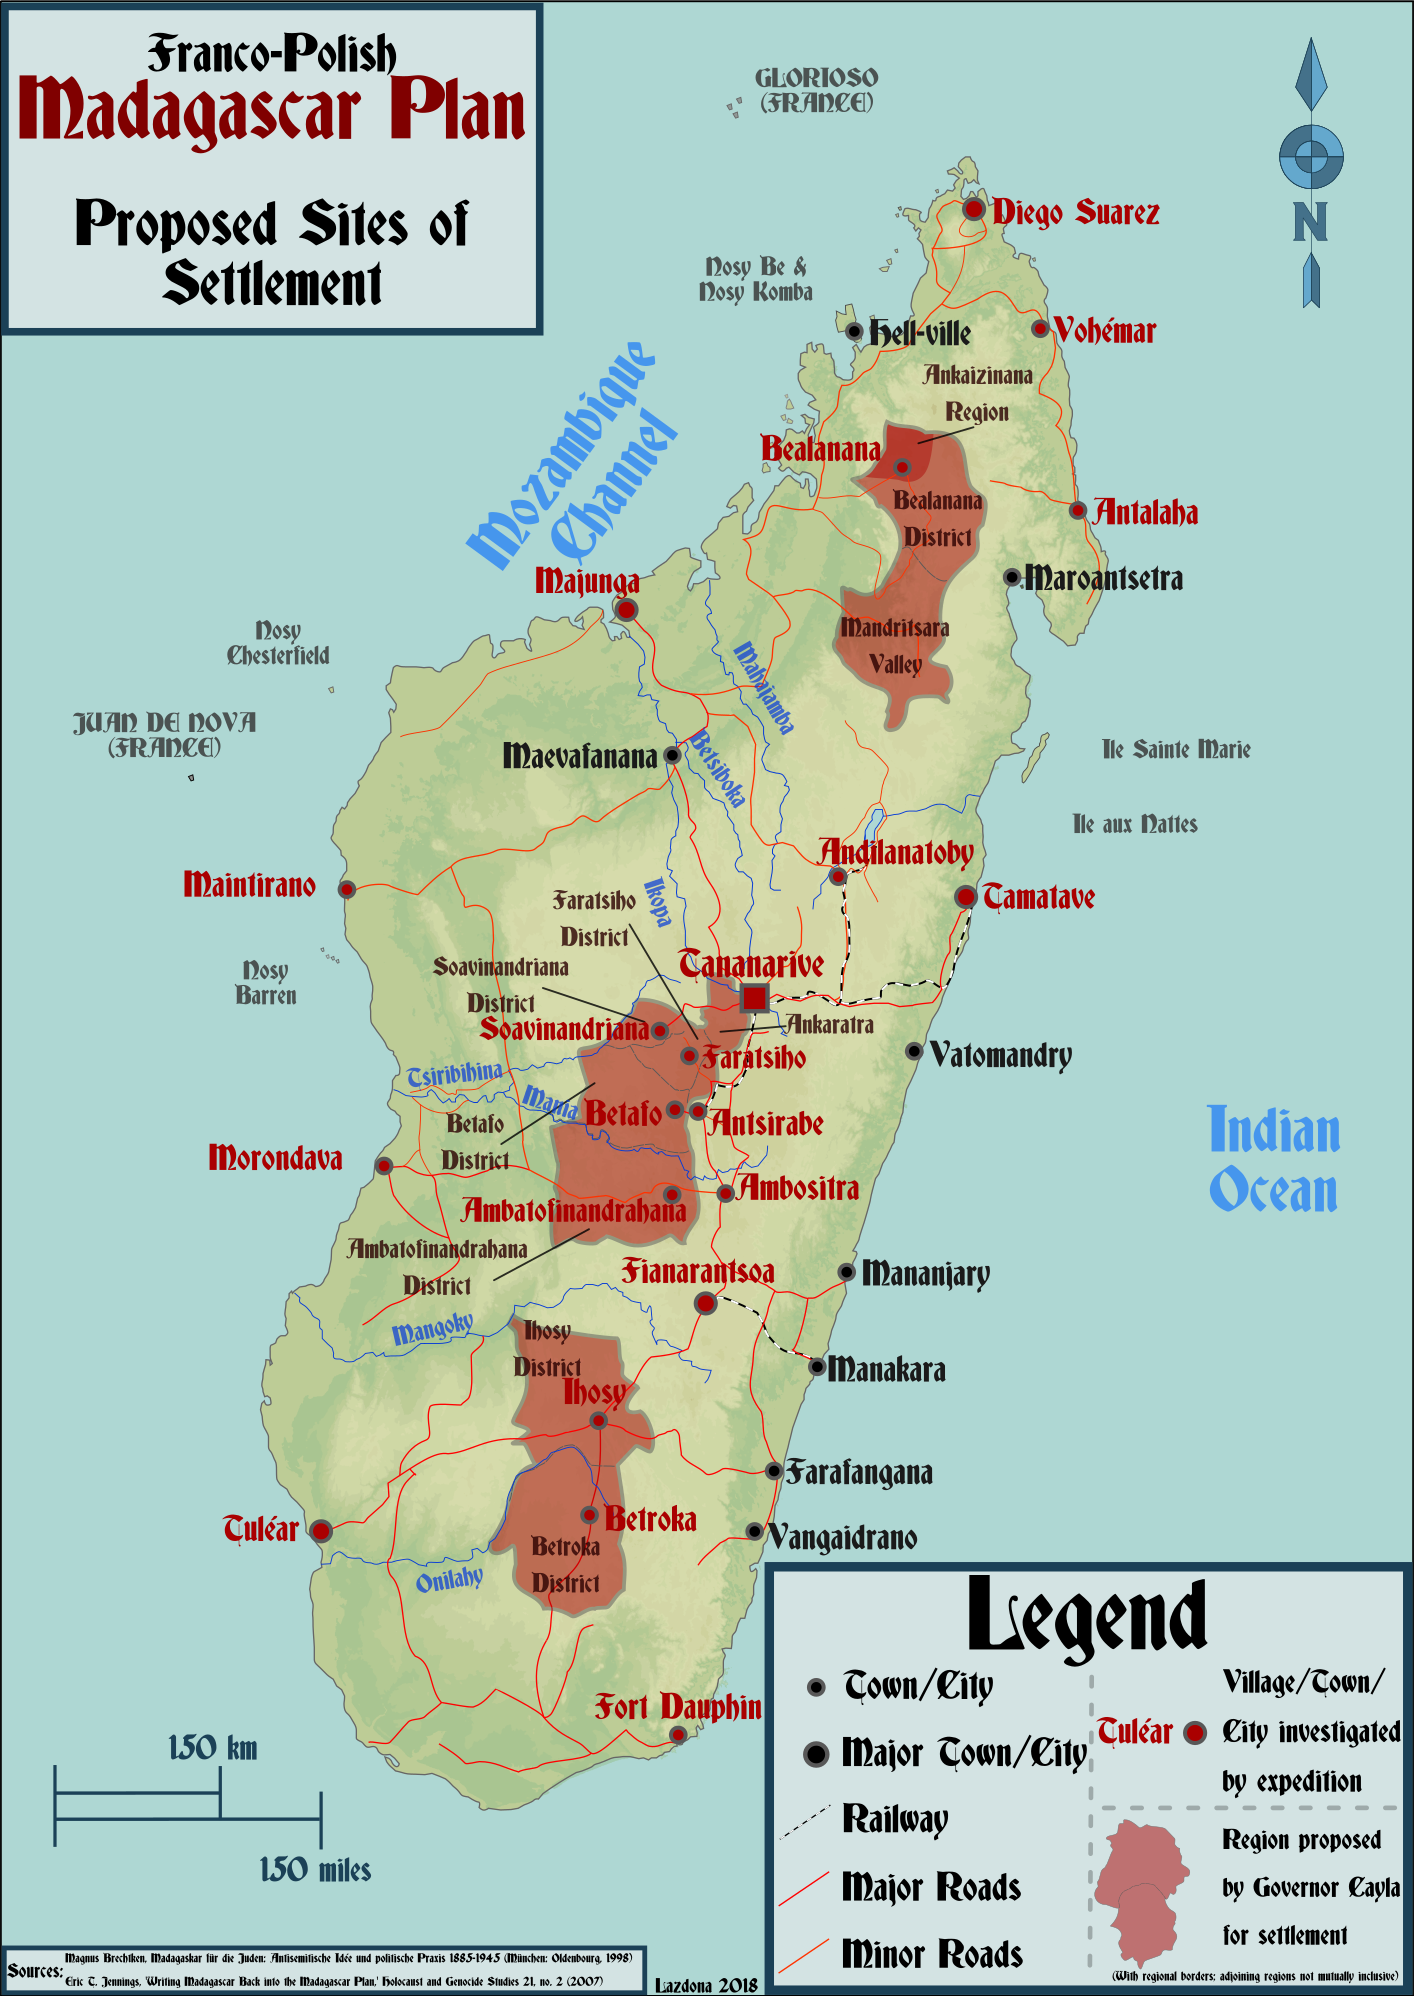 Kart over Madagaskar med områder hvor Polen og Frankrike ønsker å flytte de europeiske jødene. 